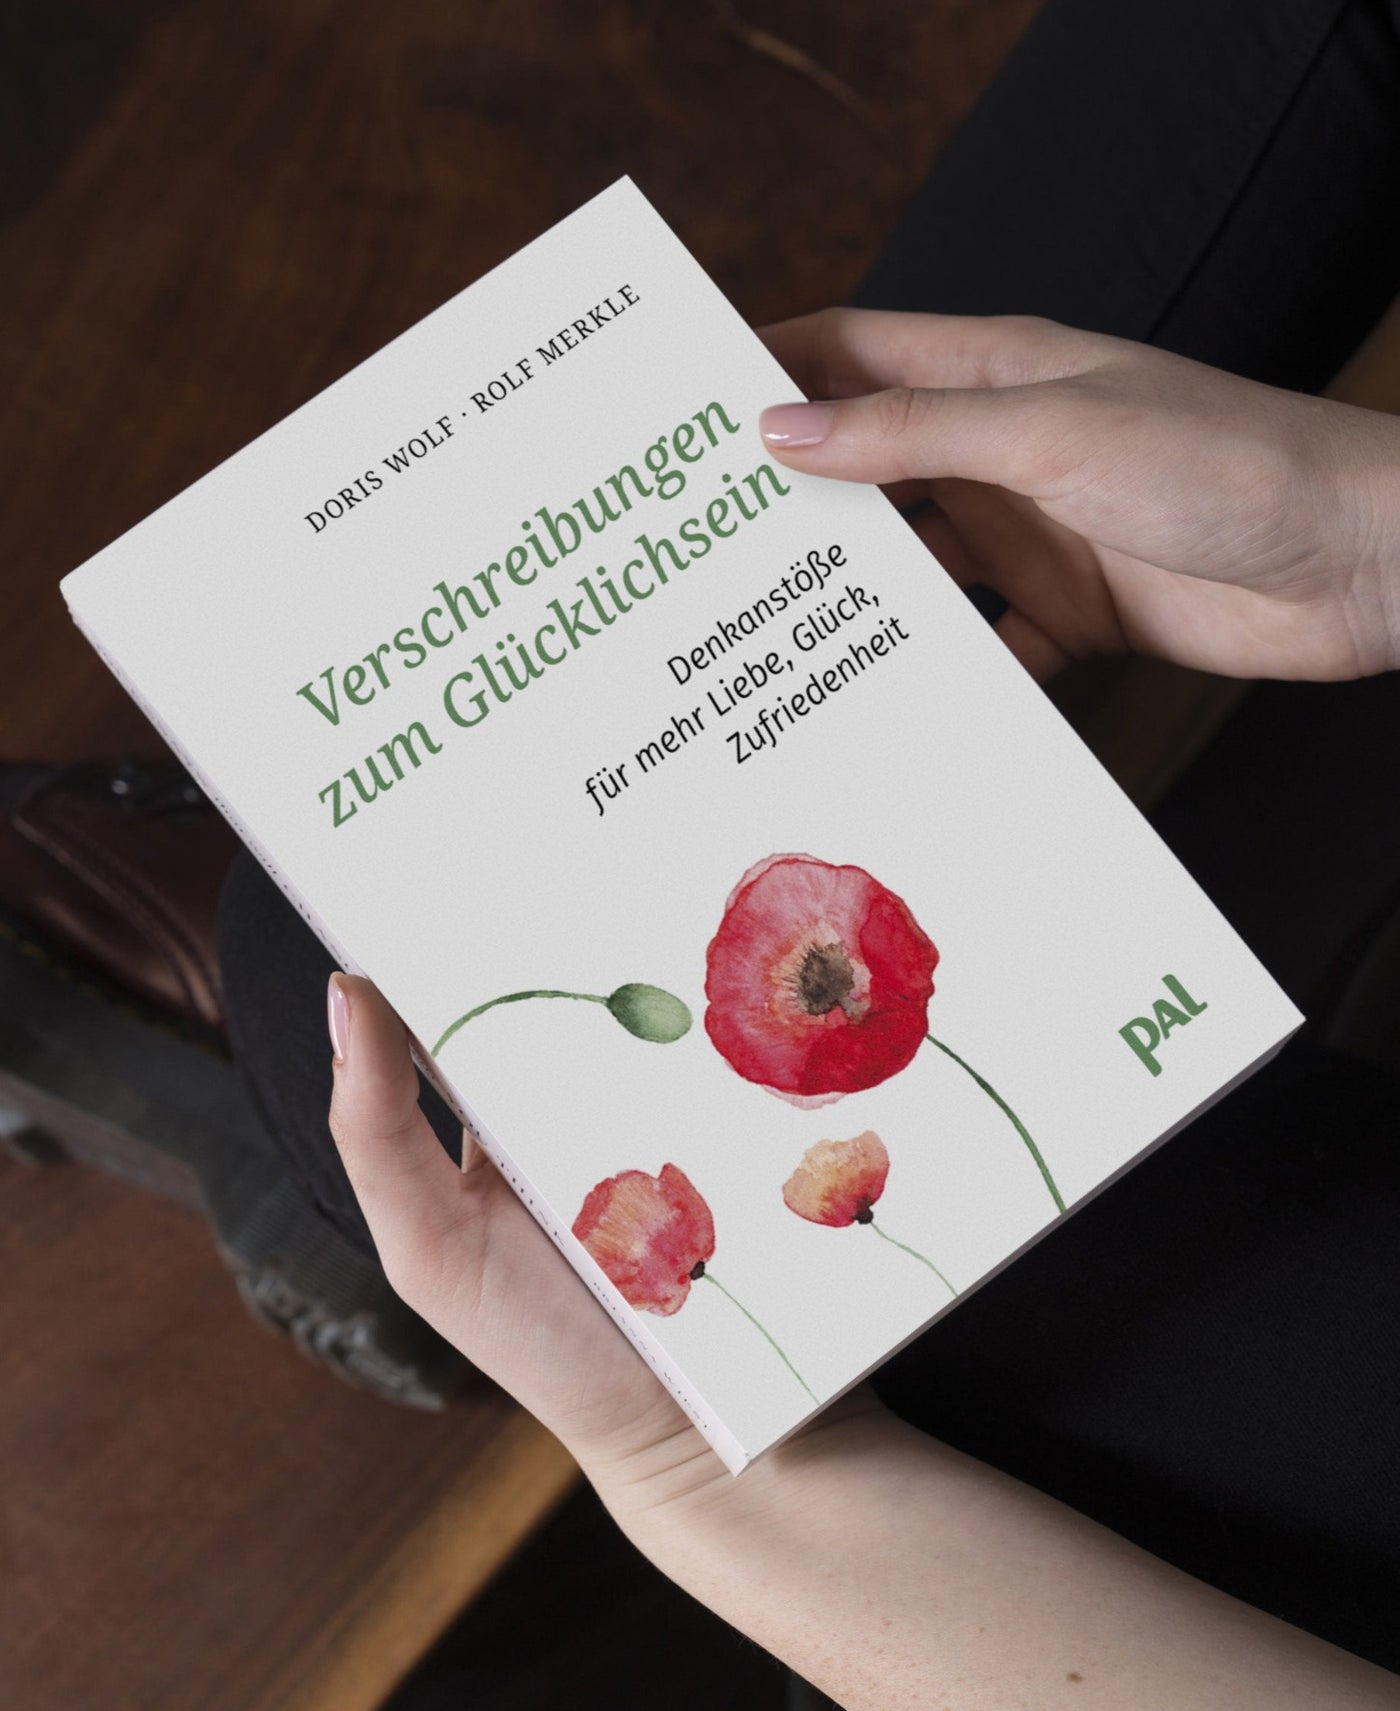 Ratgeber Psychologie Verschreibungen zum Glücklichsein Denkanstöße Doris Wolf Rolf Merkle PAL Verlag